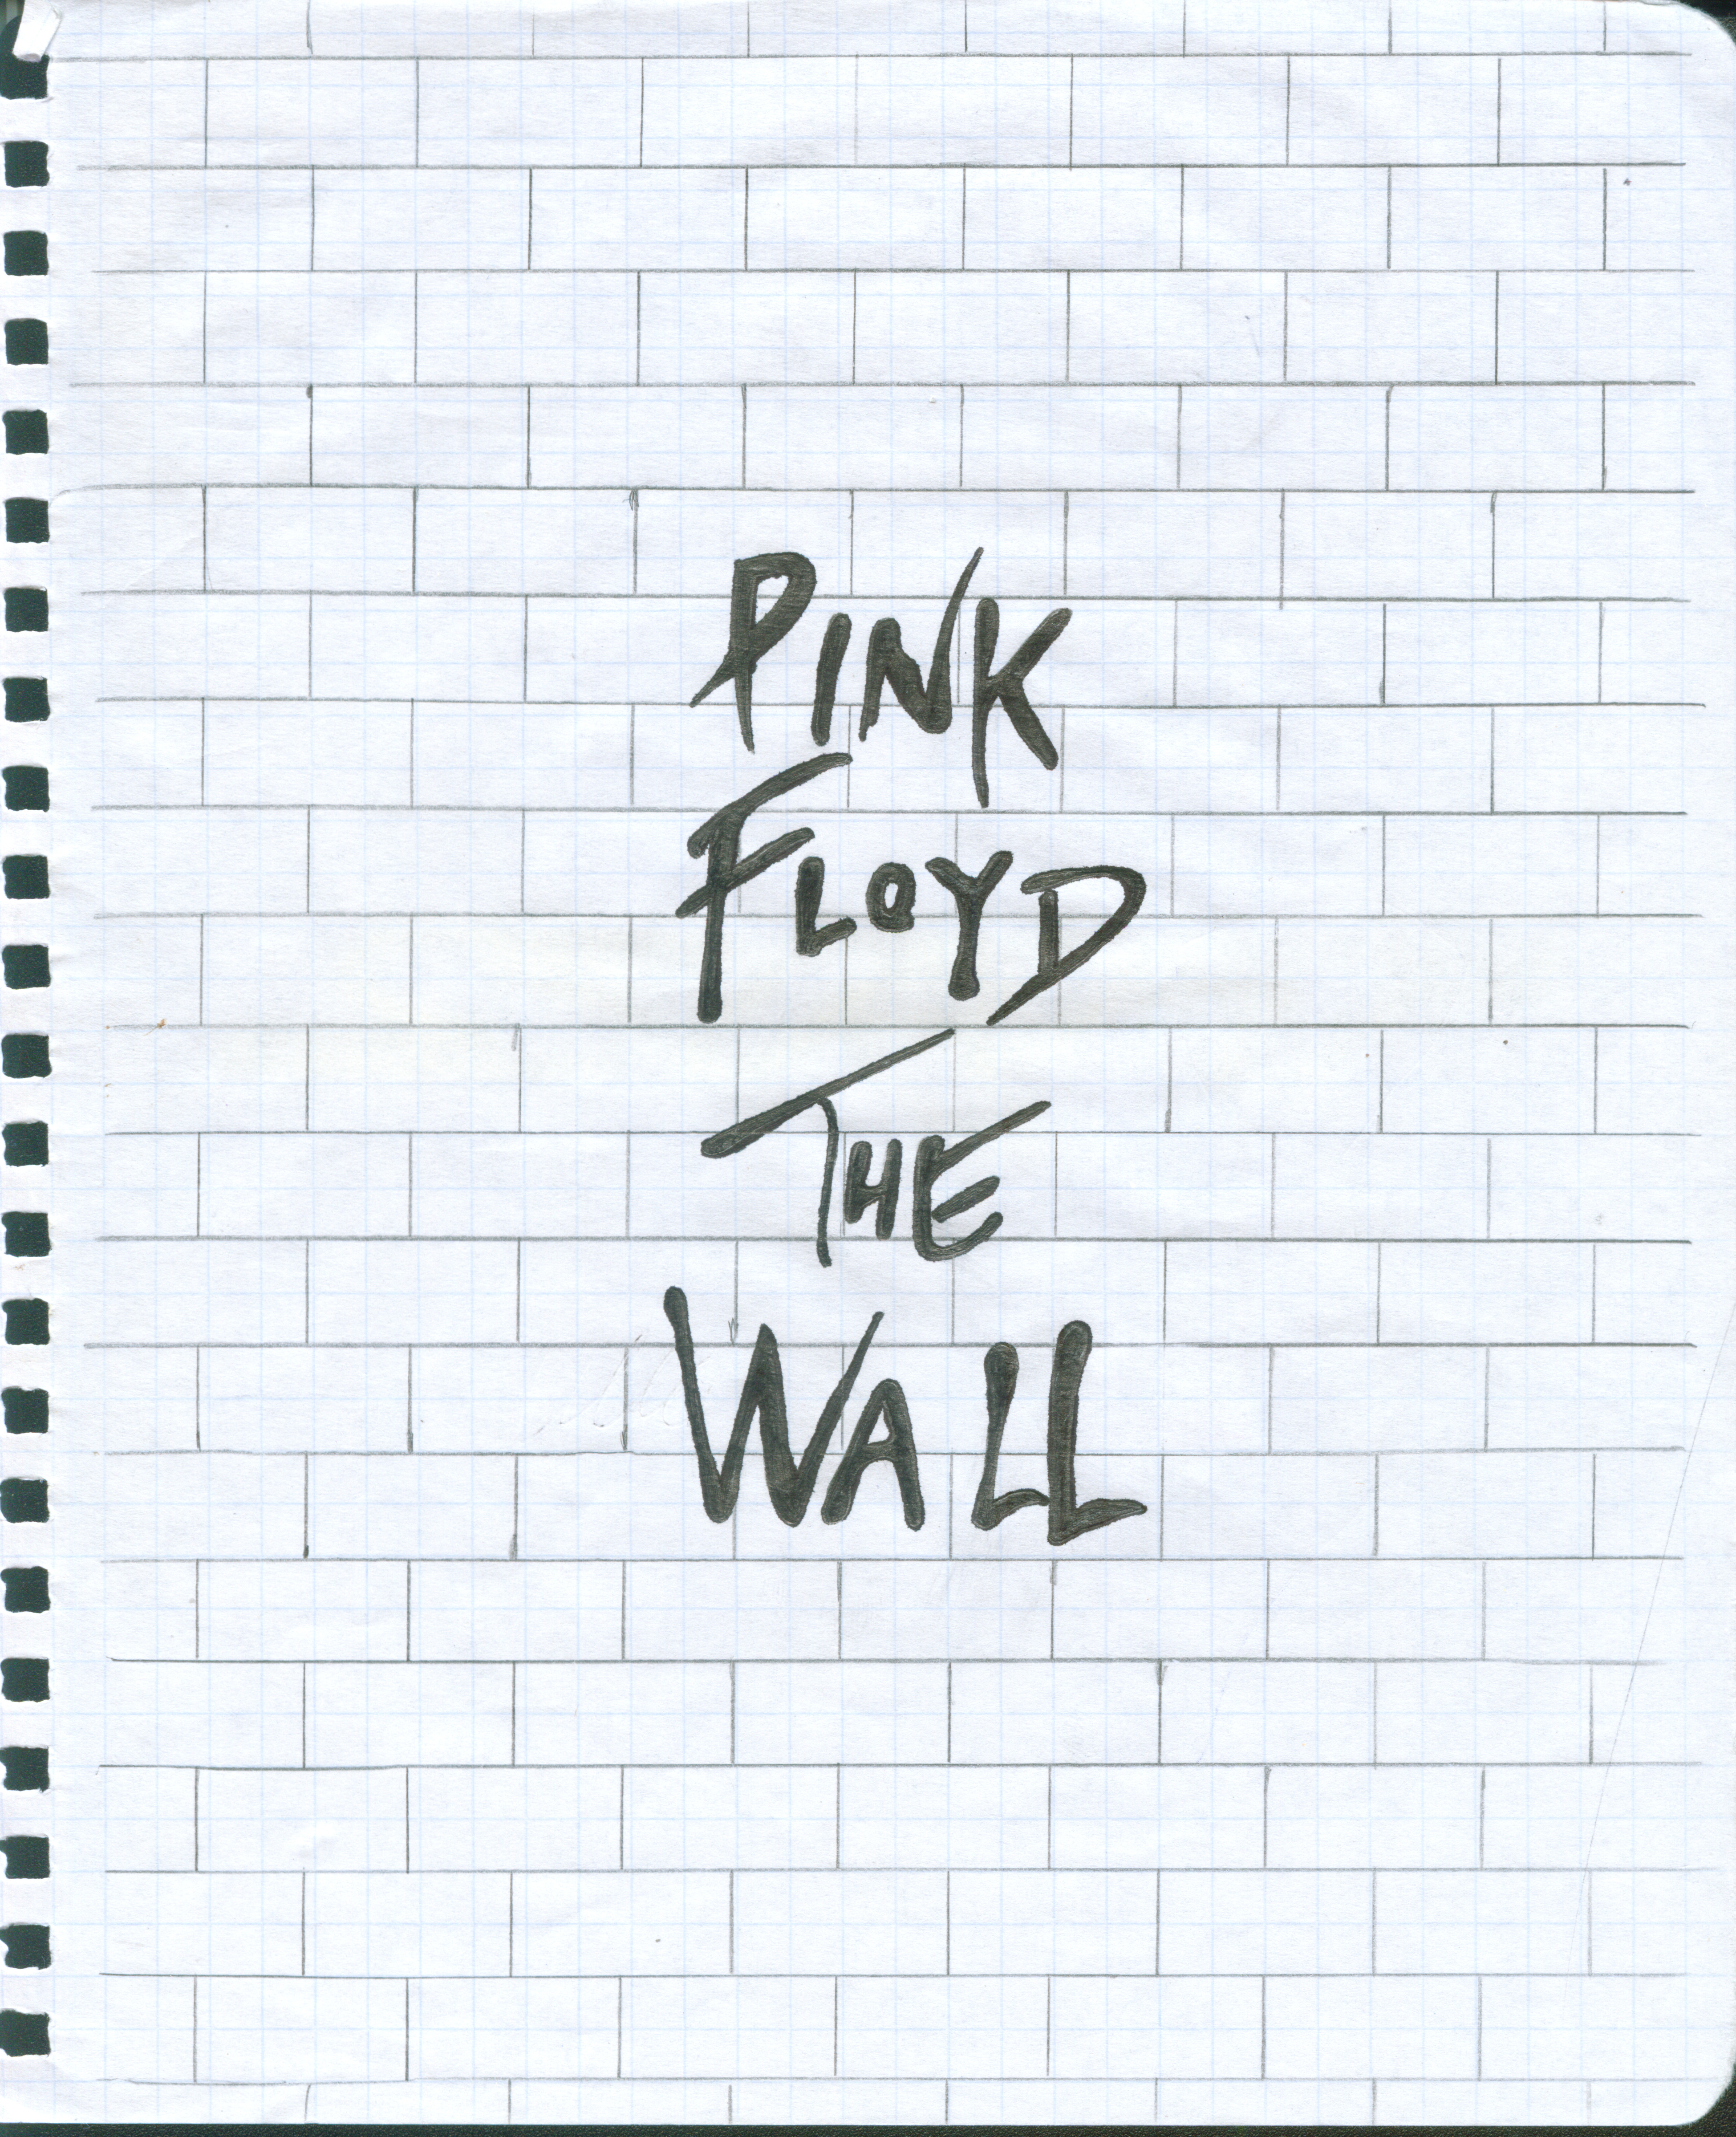 http://orig13.deviantart.net/6a6c/f/2011/317/9/e/pink_floyd_the_wall_cover_by_romasrt-d4g155m.jpg